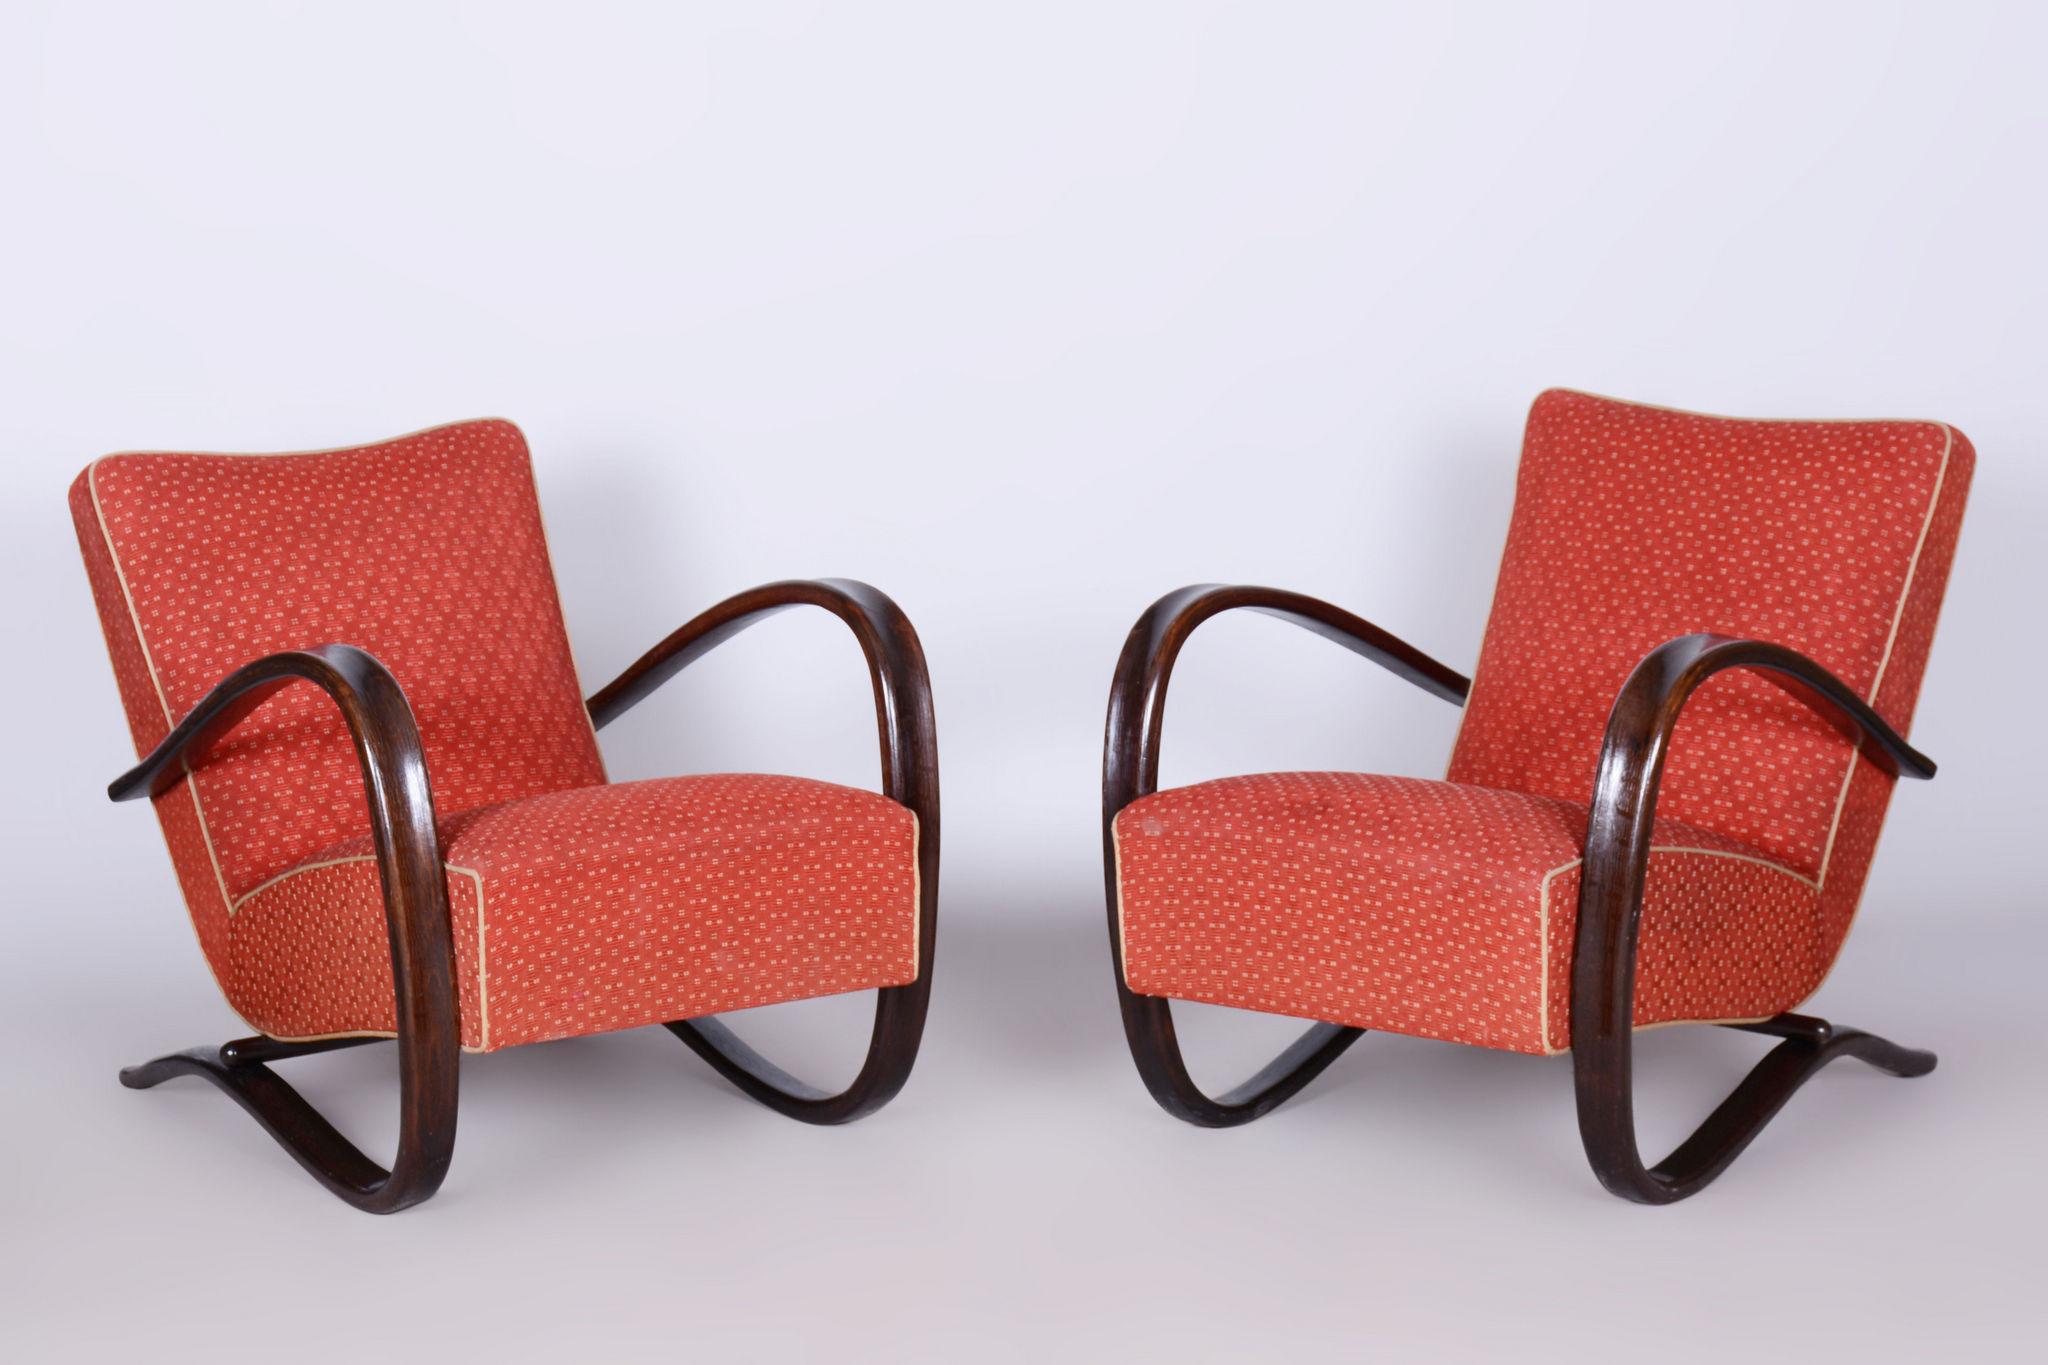 Conçu par Jindrich Halabala, un designer de renom reconnu pour avoir inauguré la production de meubles en série dans sa Tchécoslovaquie natale.

Fabriqué par Up&Up, un célèbre fabricant et revendeur de meubles tchécoslovaques basé à Brno. 

Cet